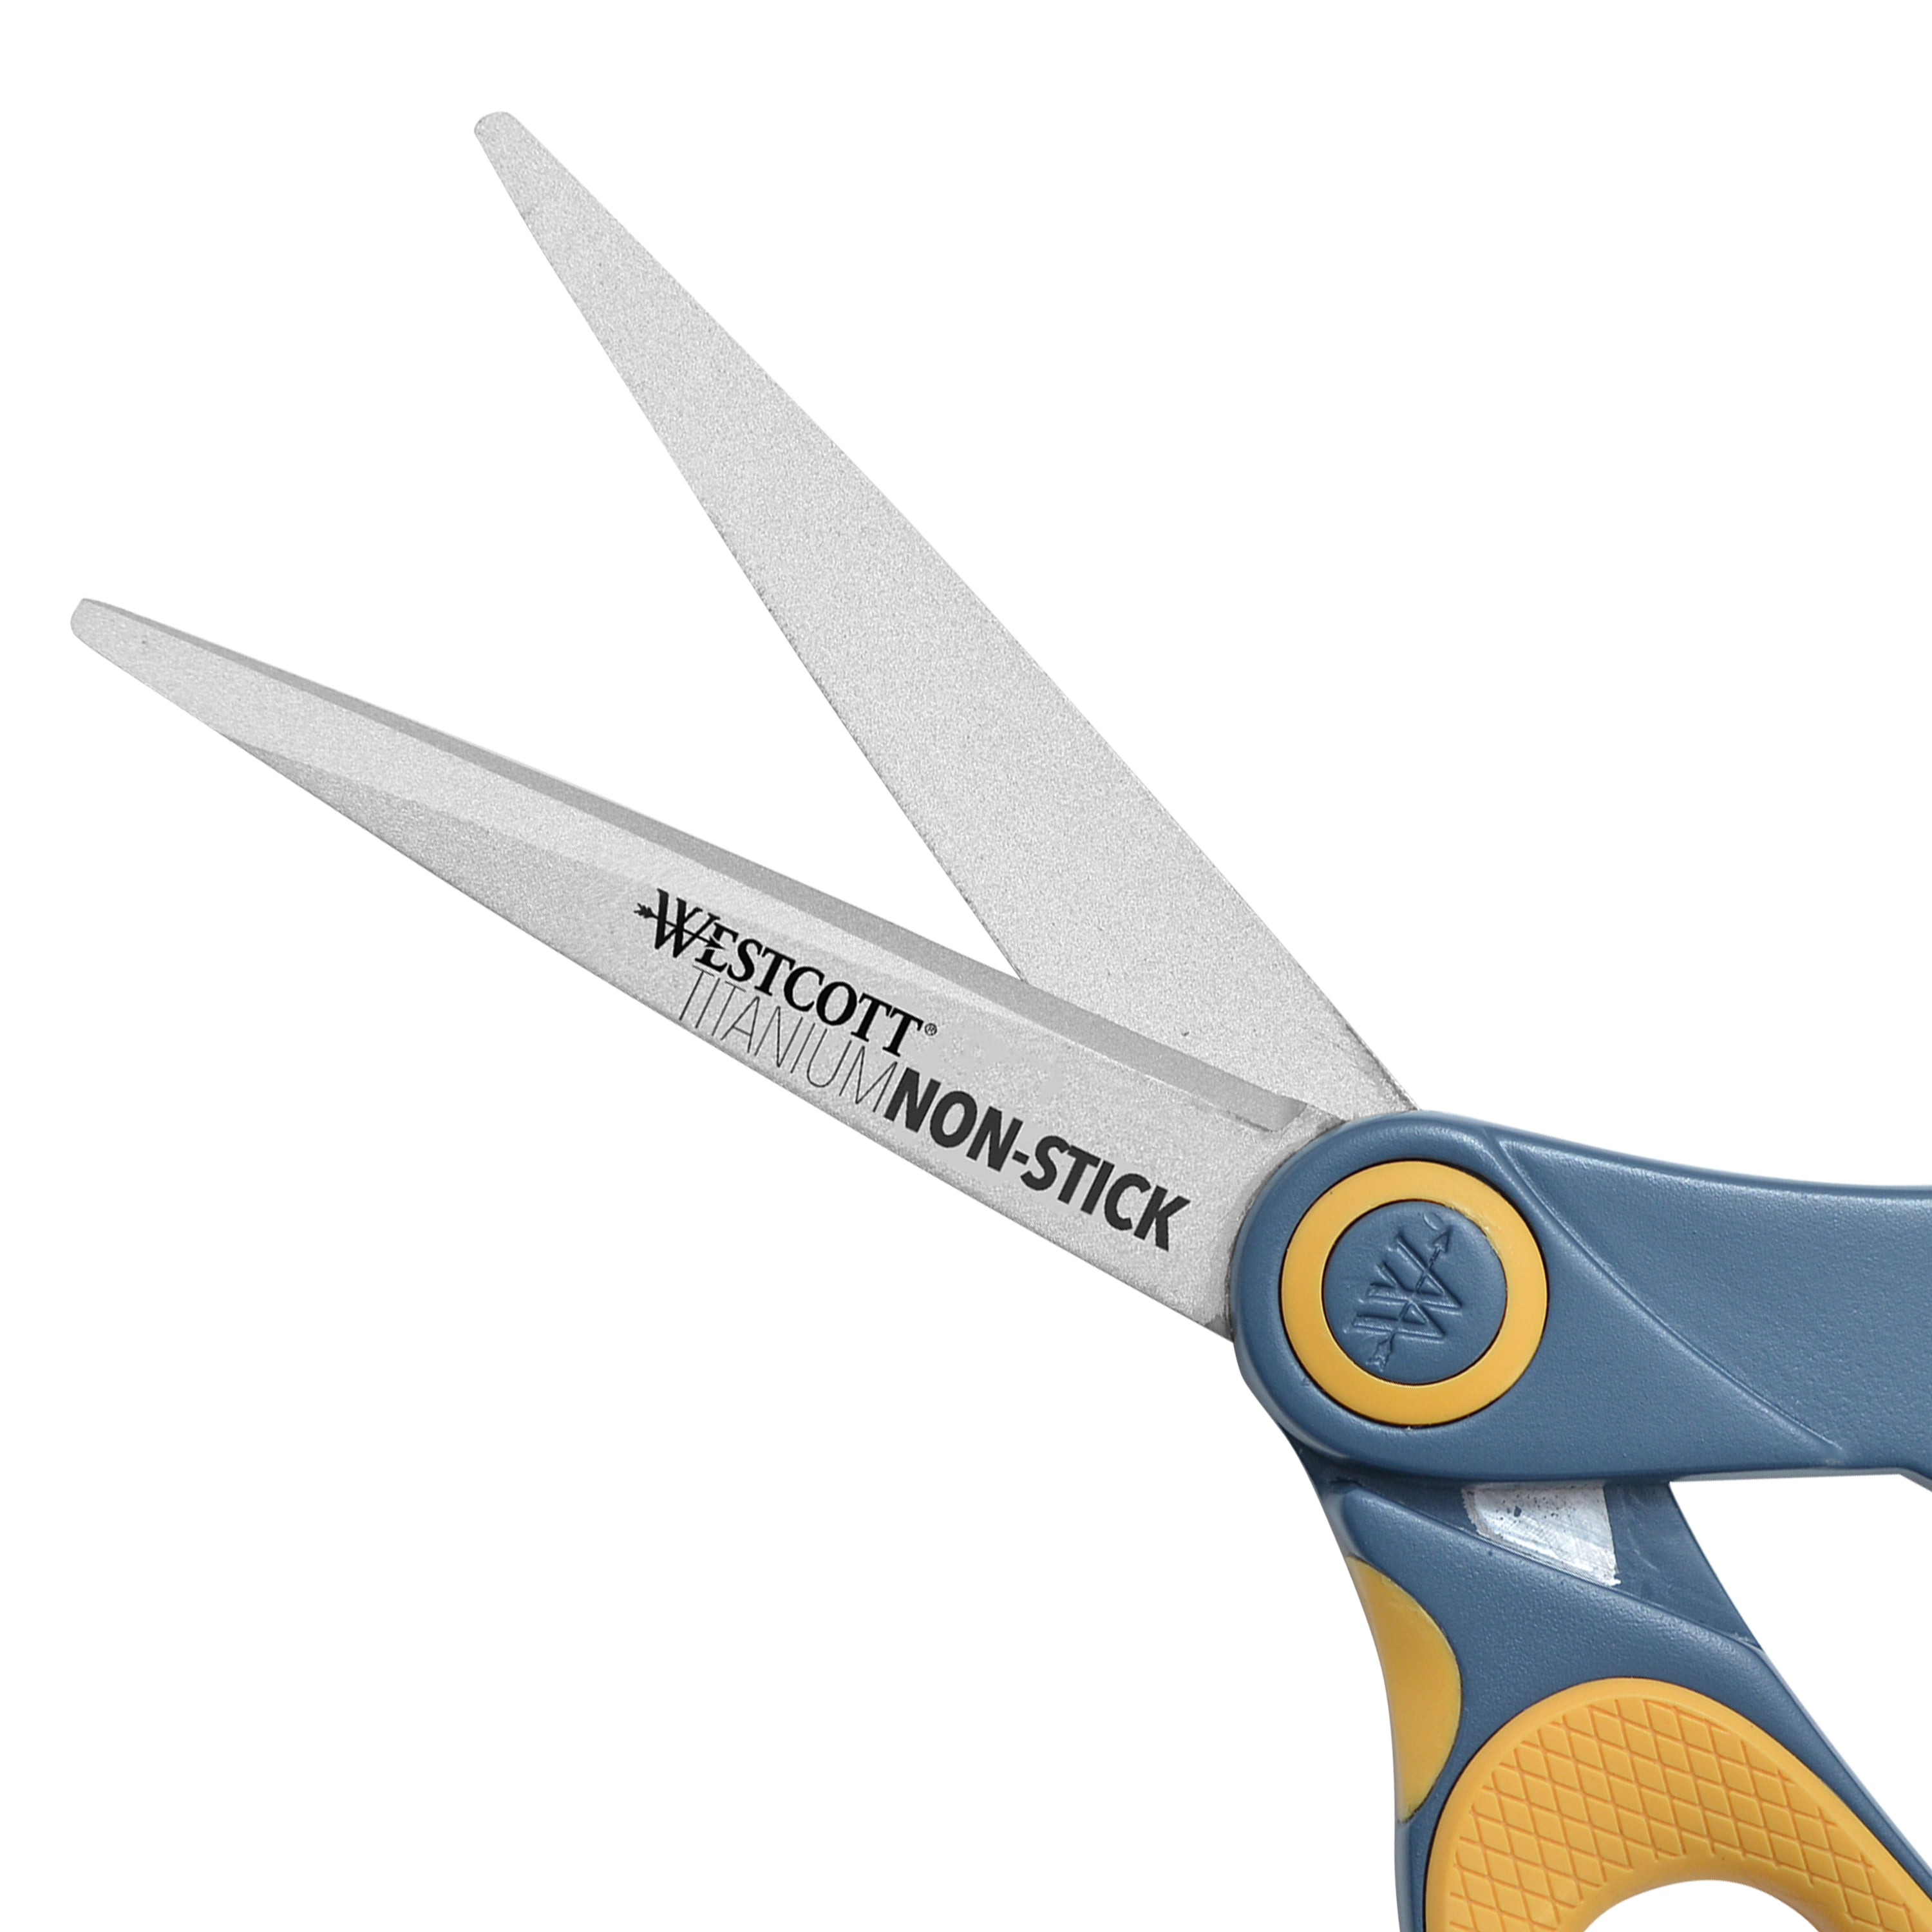 Westcott - Westcott 8 Straight Titanium Bonded Scissors, Grey/Yellow, 2  Pack (13901)